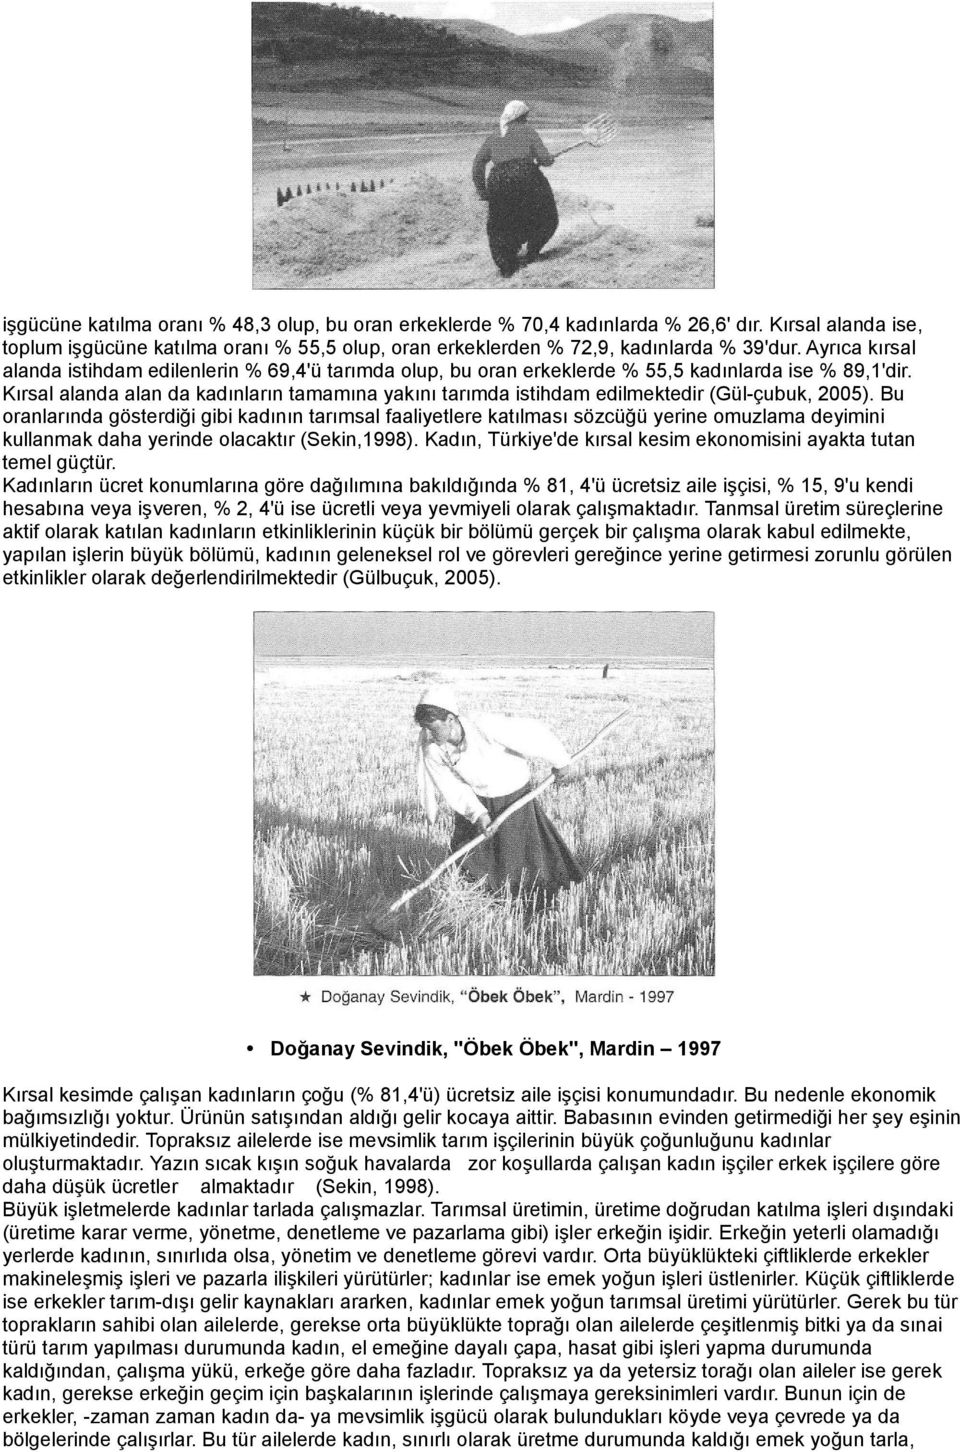 Kırsal alanda alan da kadınların tamamına yakını tarımda istihdam edilmektedir (Gül-çubuk, 2005).